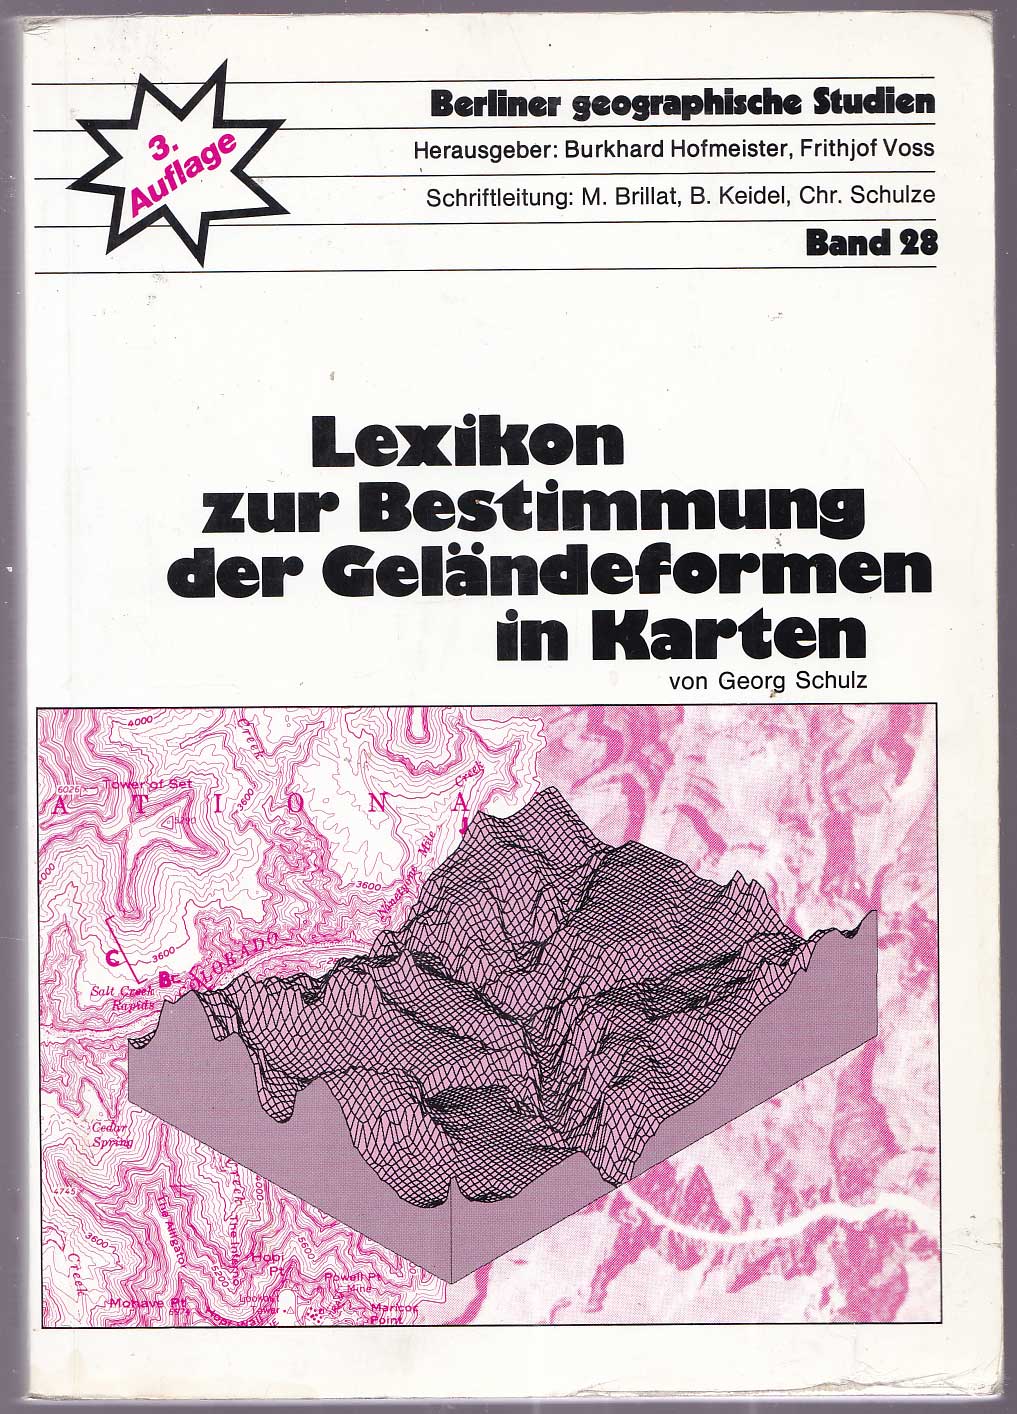 Lexikon zur Bestimmung der Geländeformen in Karten - Schulz, Georg [Hofmeister, Burkhard; Voss, Frithjof Hg.]